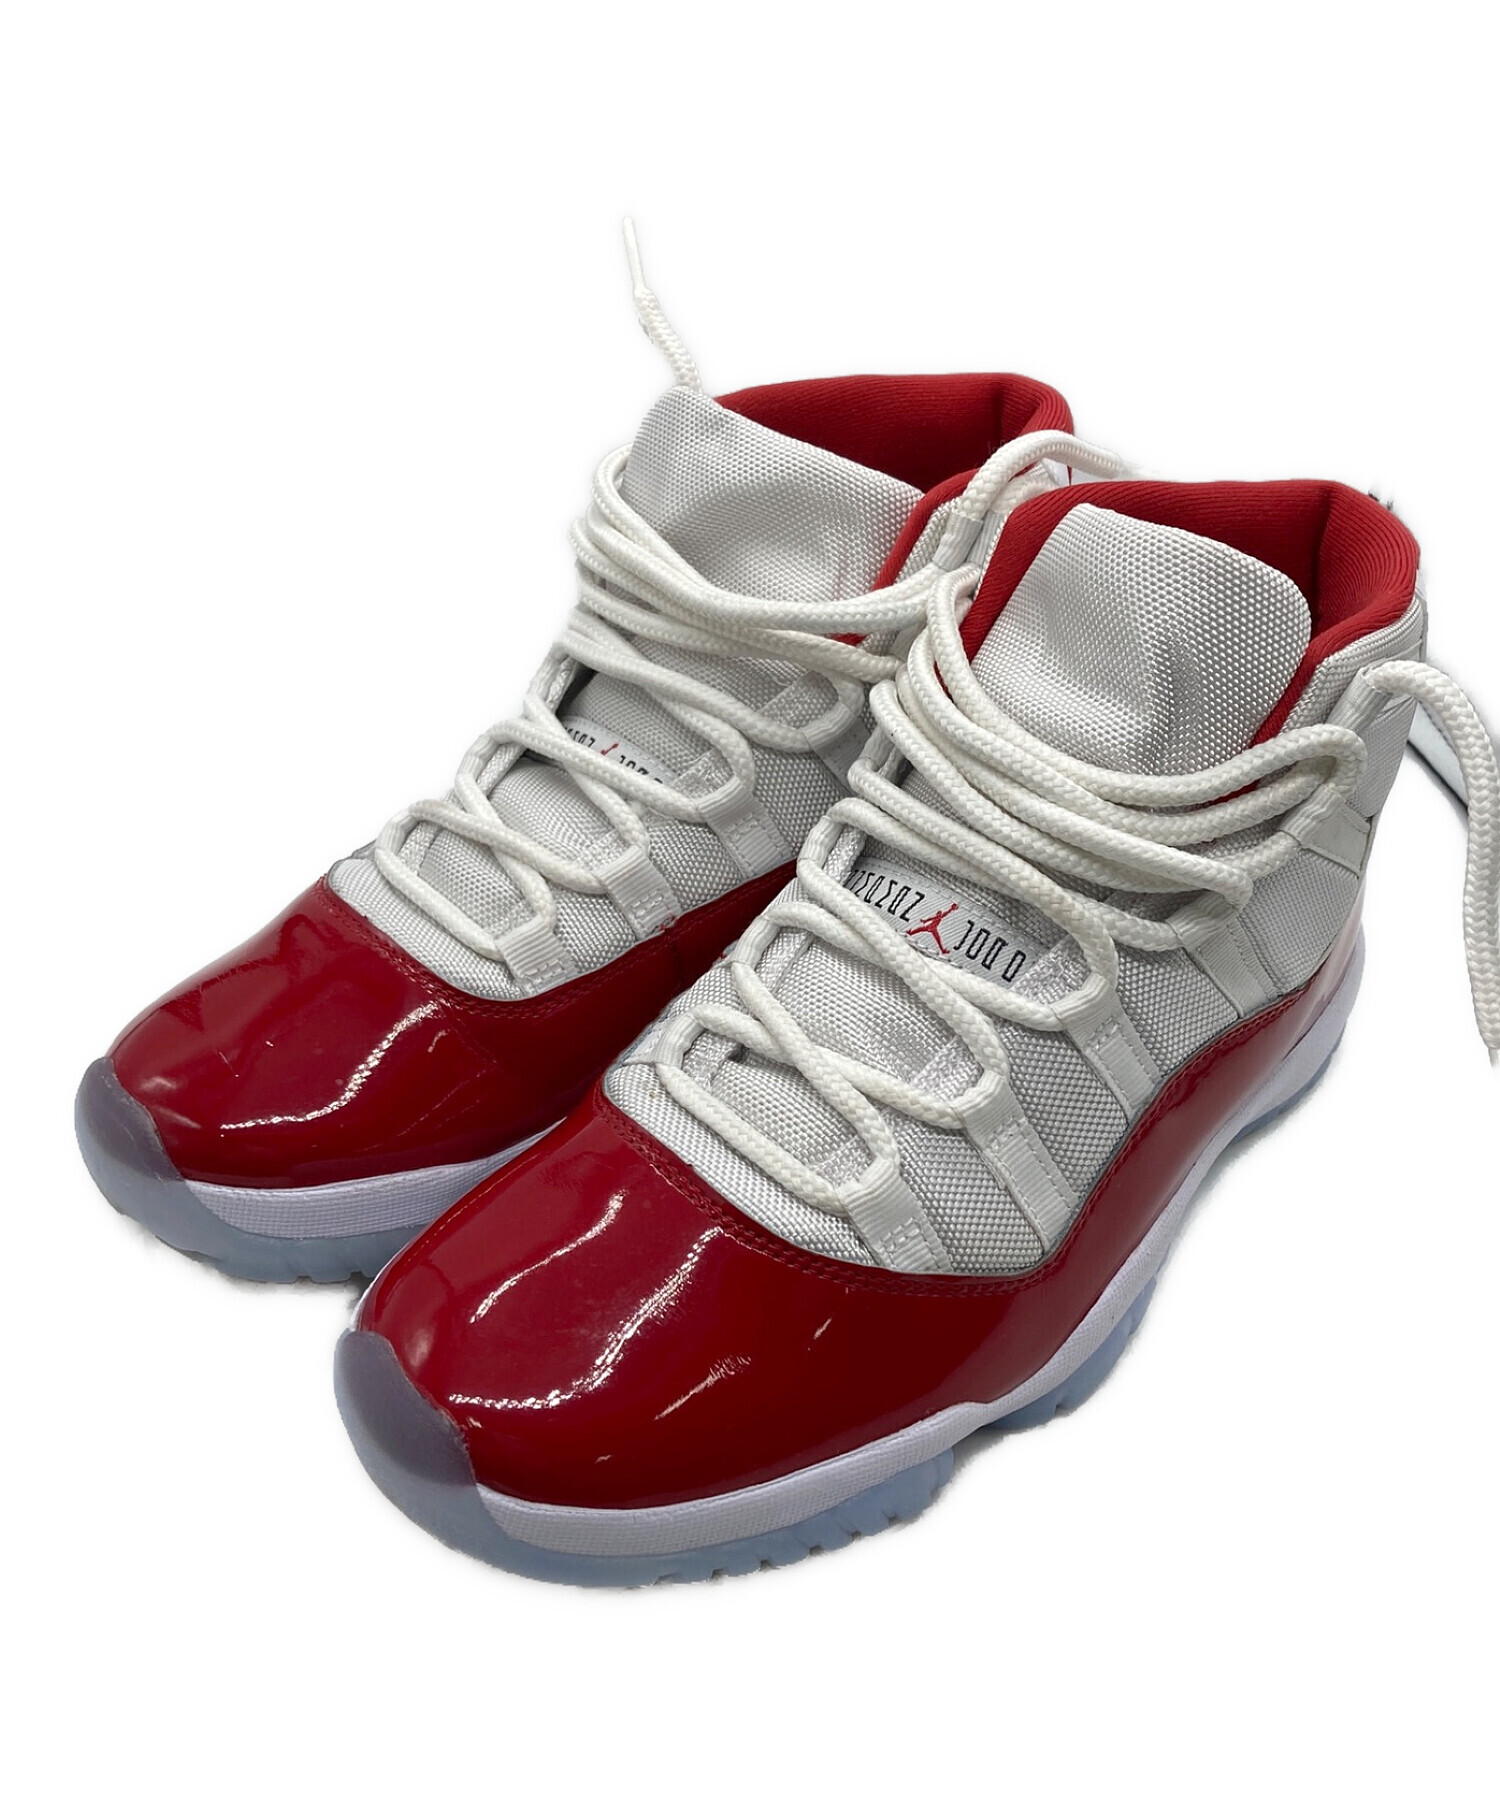 15,540円【新品未使用】Nike Air Jordan 11 Retro 28cm